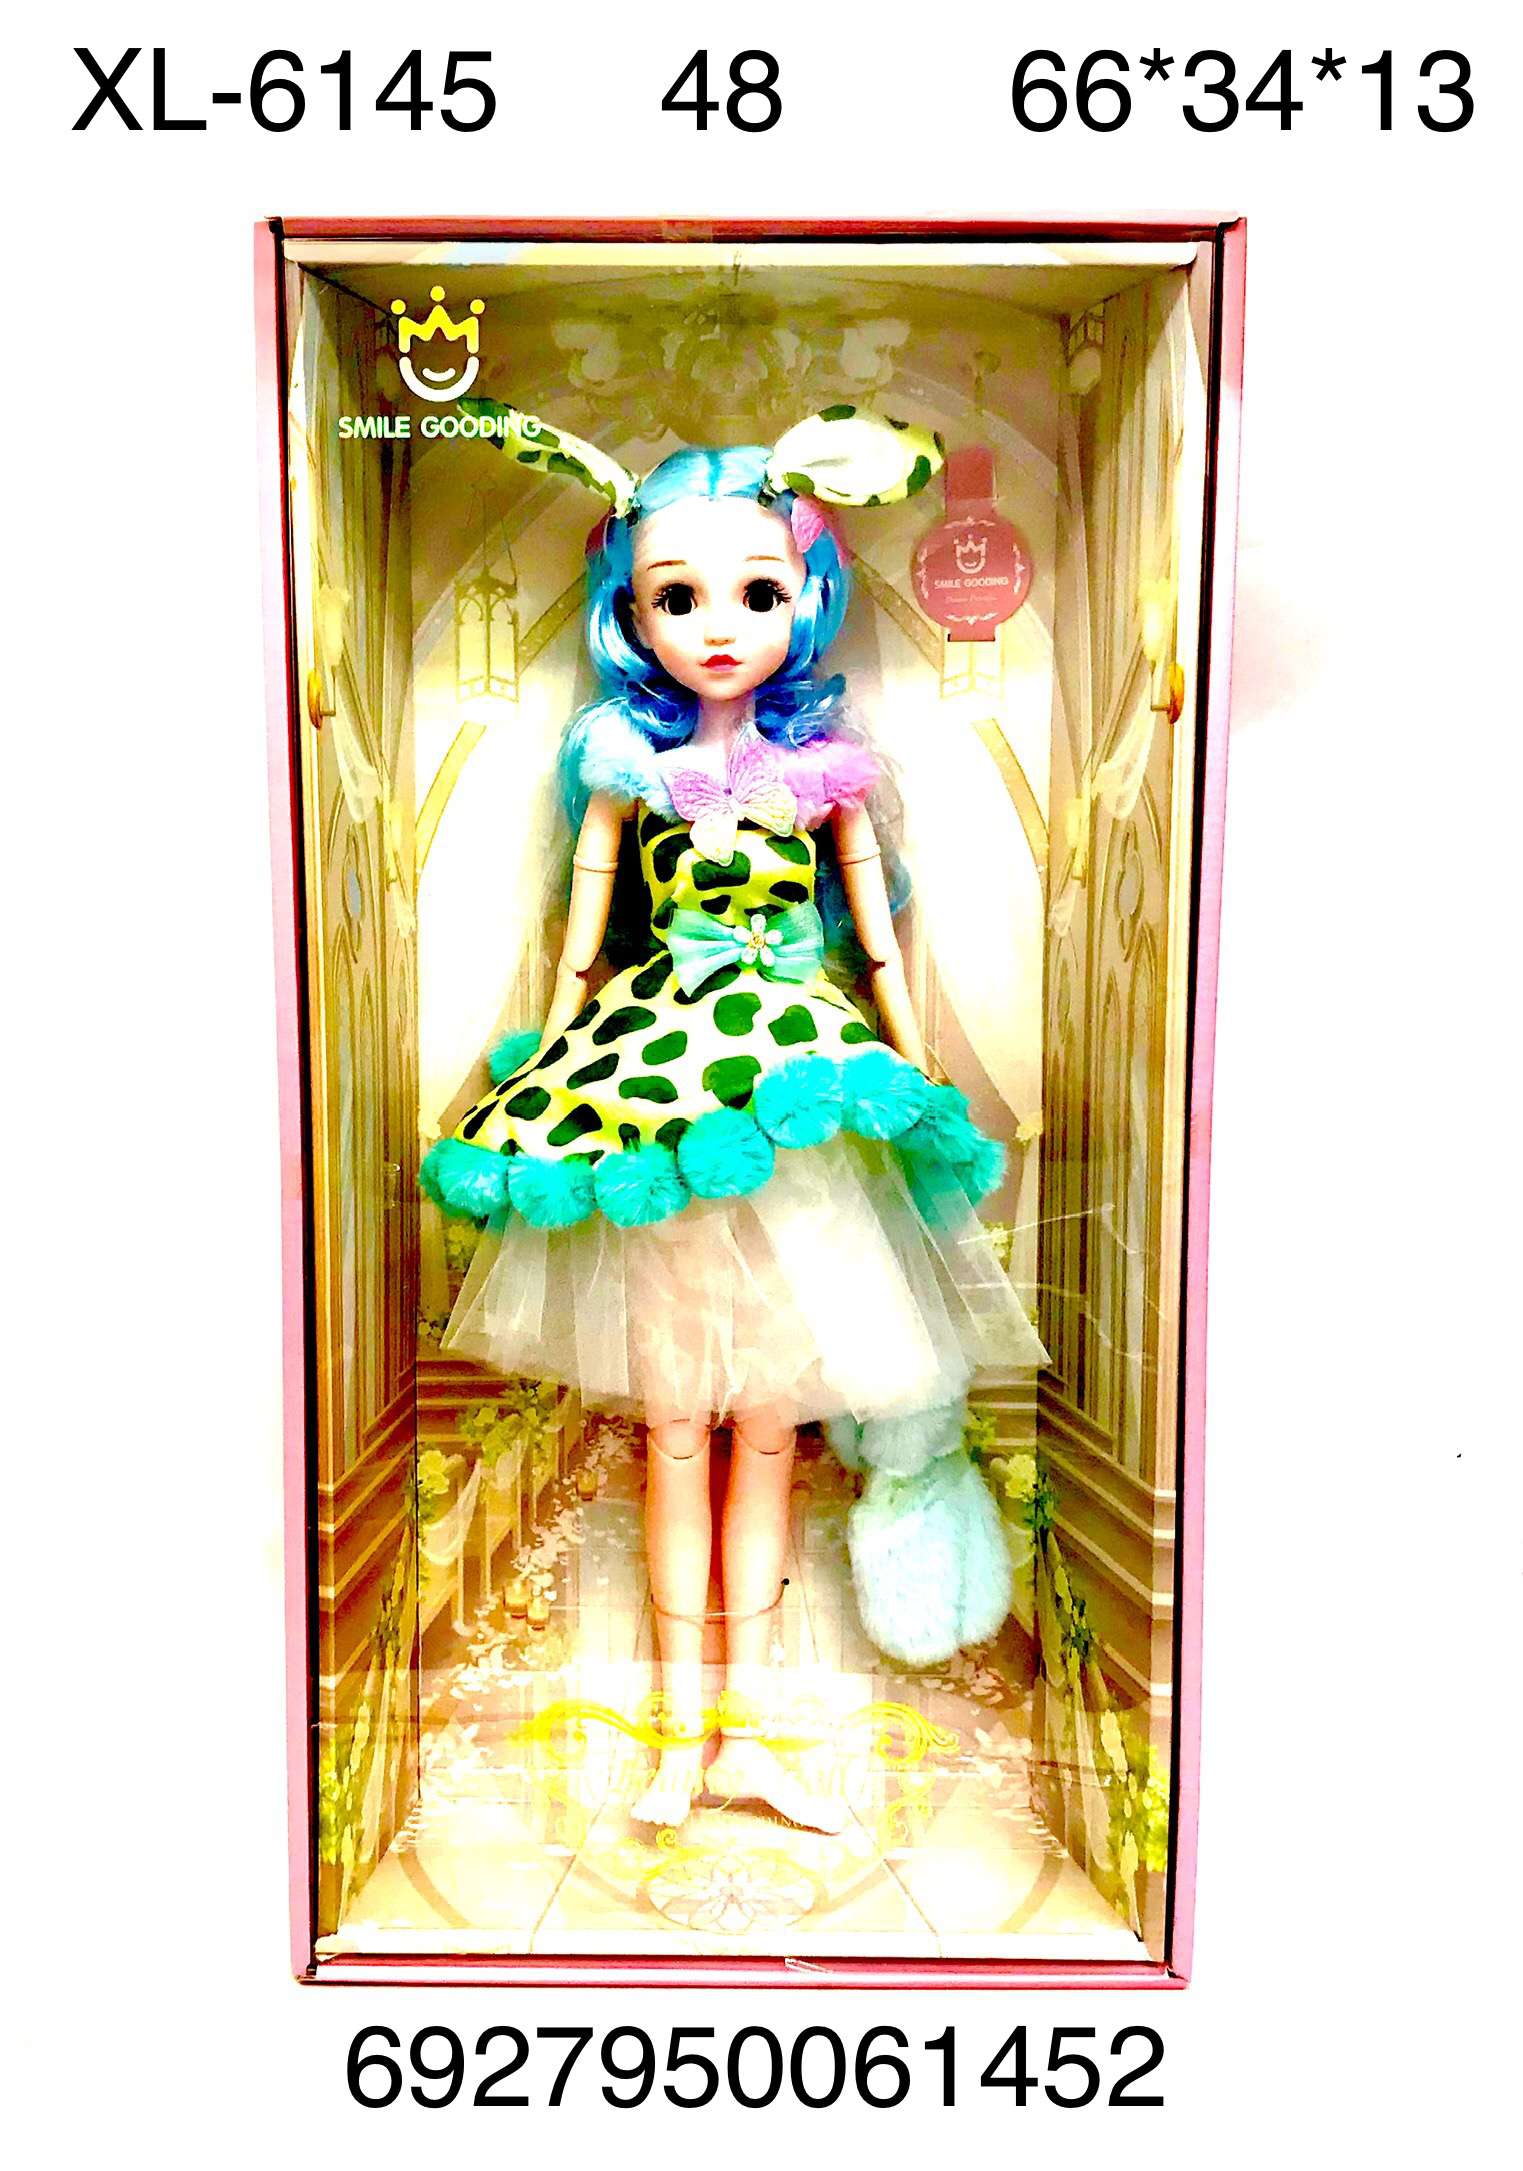 Кукла XL-6145 Smile - Магнитогорск 